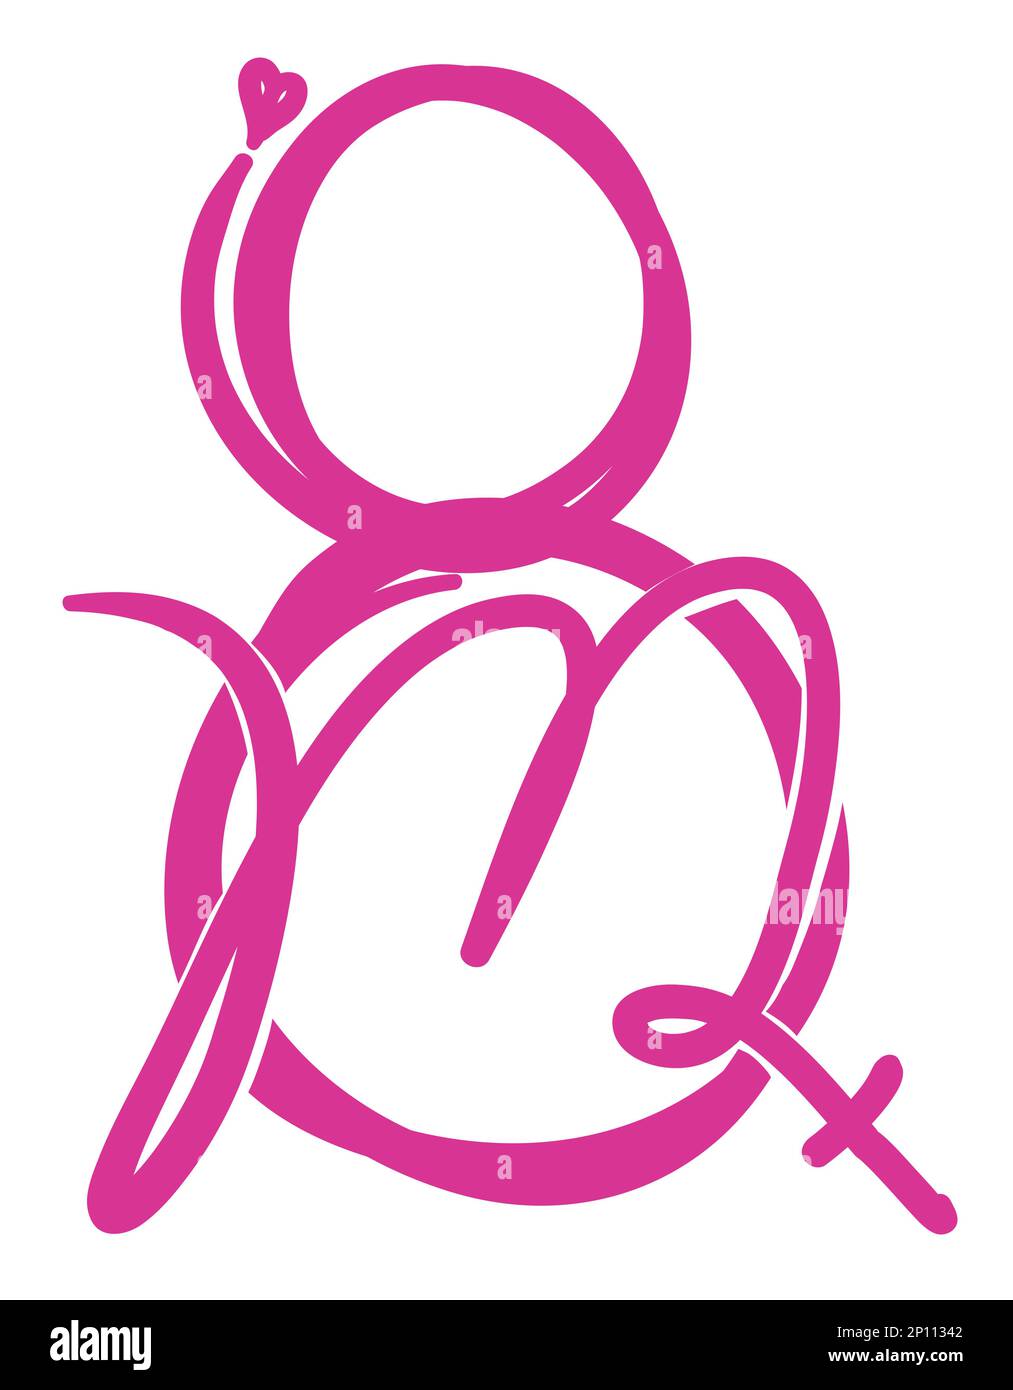 Design stylisé pour commémorer la Journée de la femme sur 8 mars : huit chiffres, lettre M, symbole féminin et coeur. Illustration de Vecteur